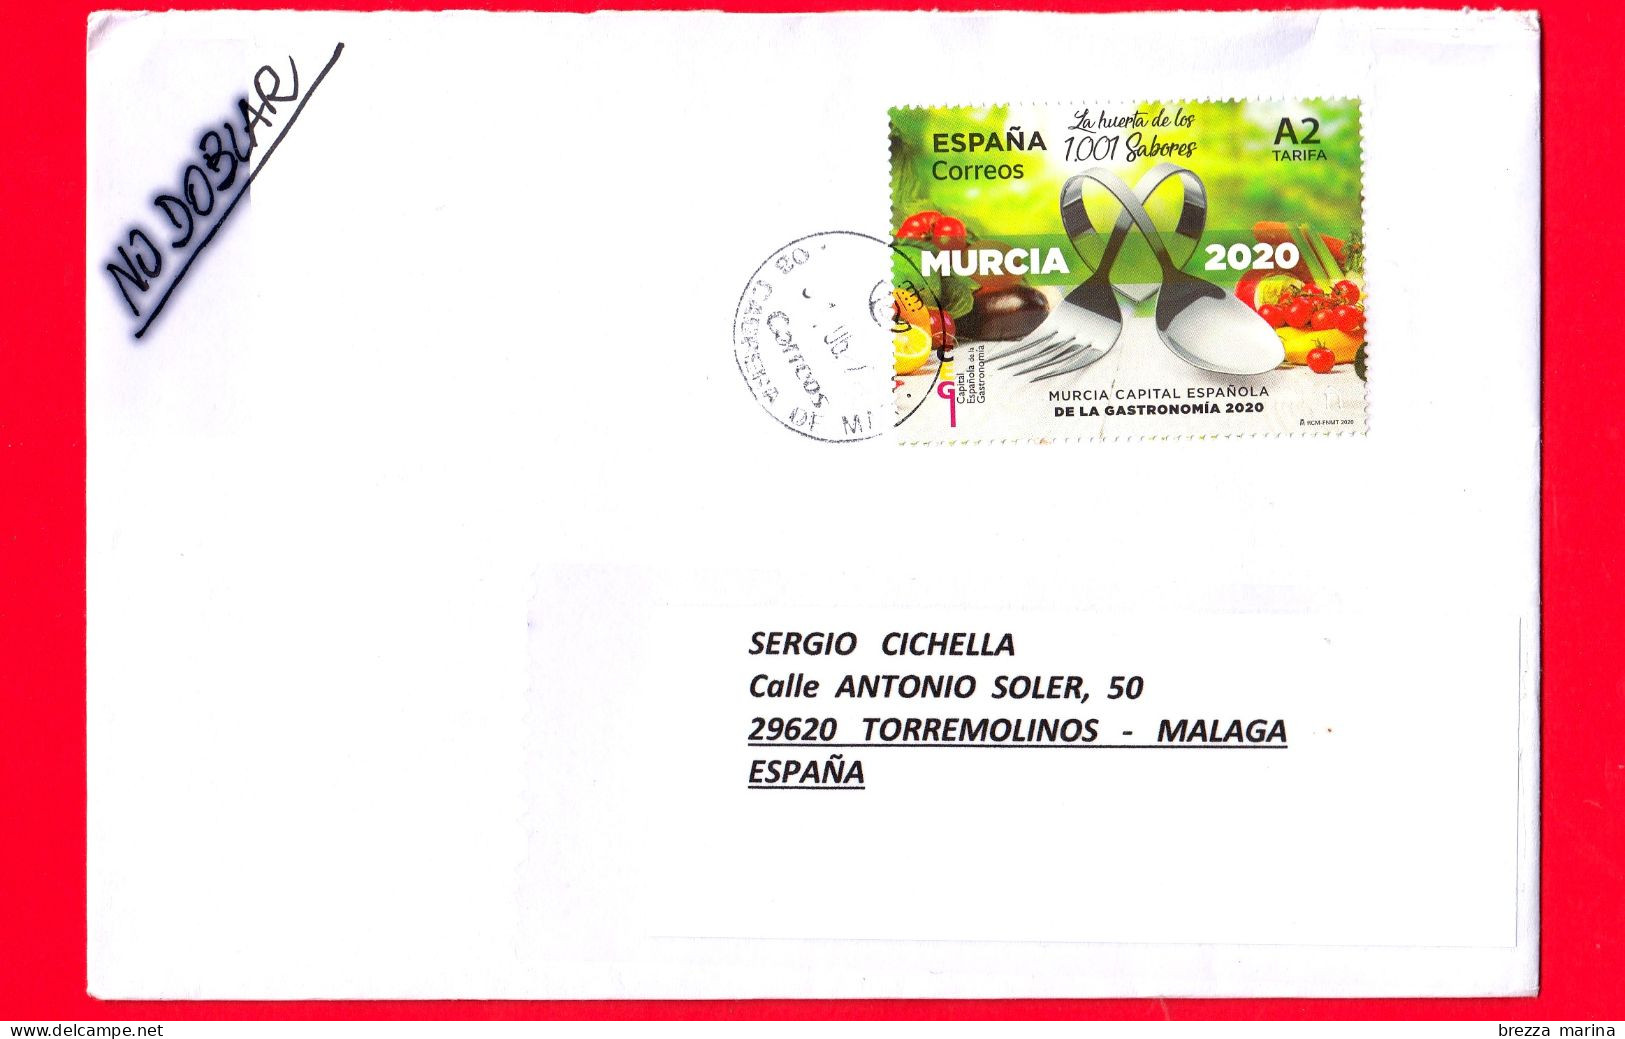 SPAGNA ~ Storia Postale ~ Busta Del 2020 - ( 2020 - Murcia - Capitale Spagnola Della Gastronomia 2020 - Cibo - A2 ) - Covers & Documents